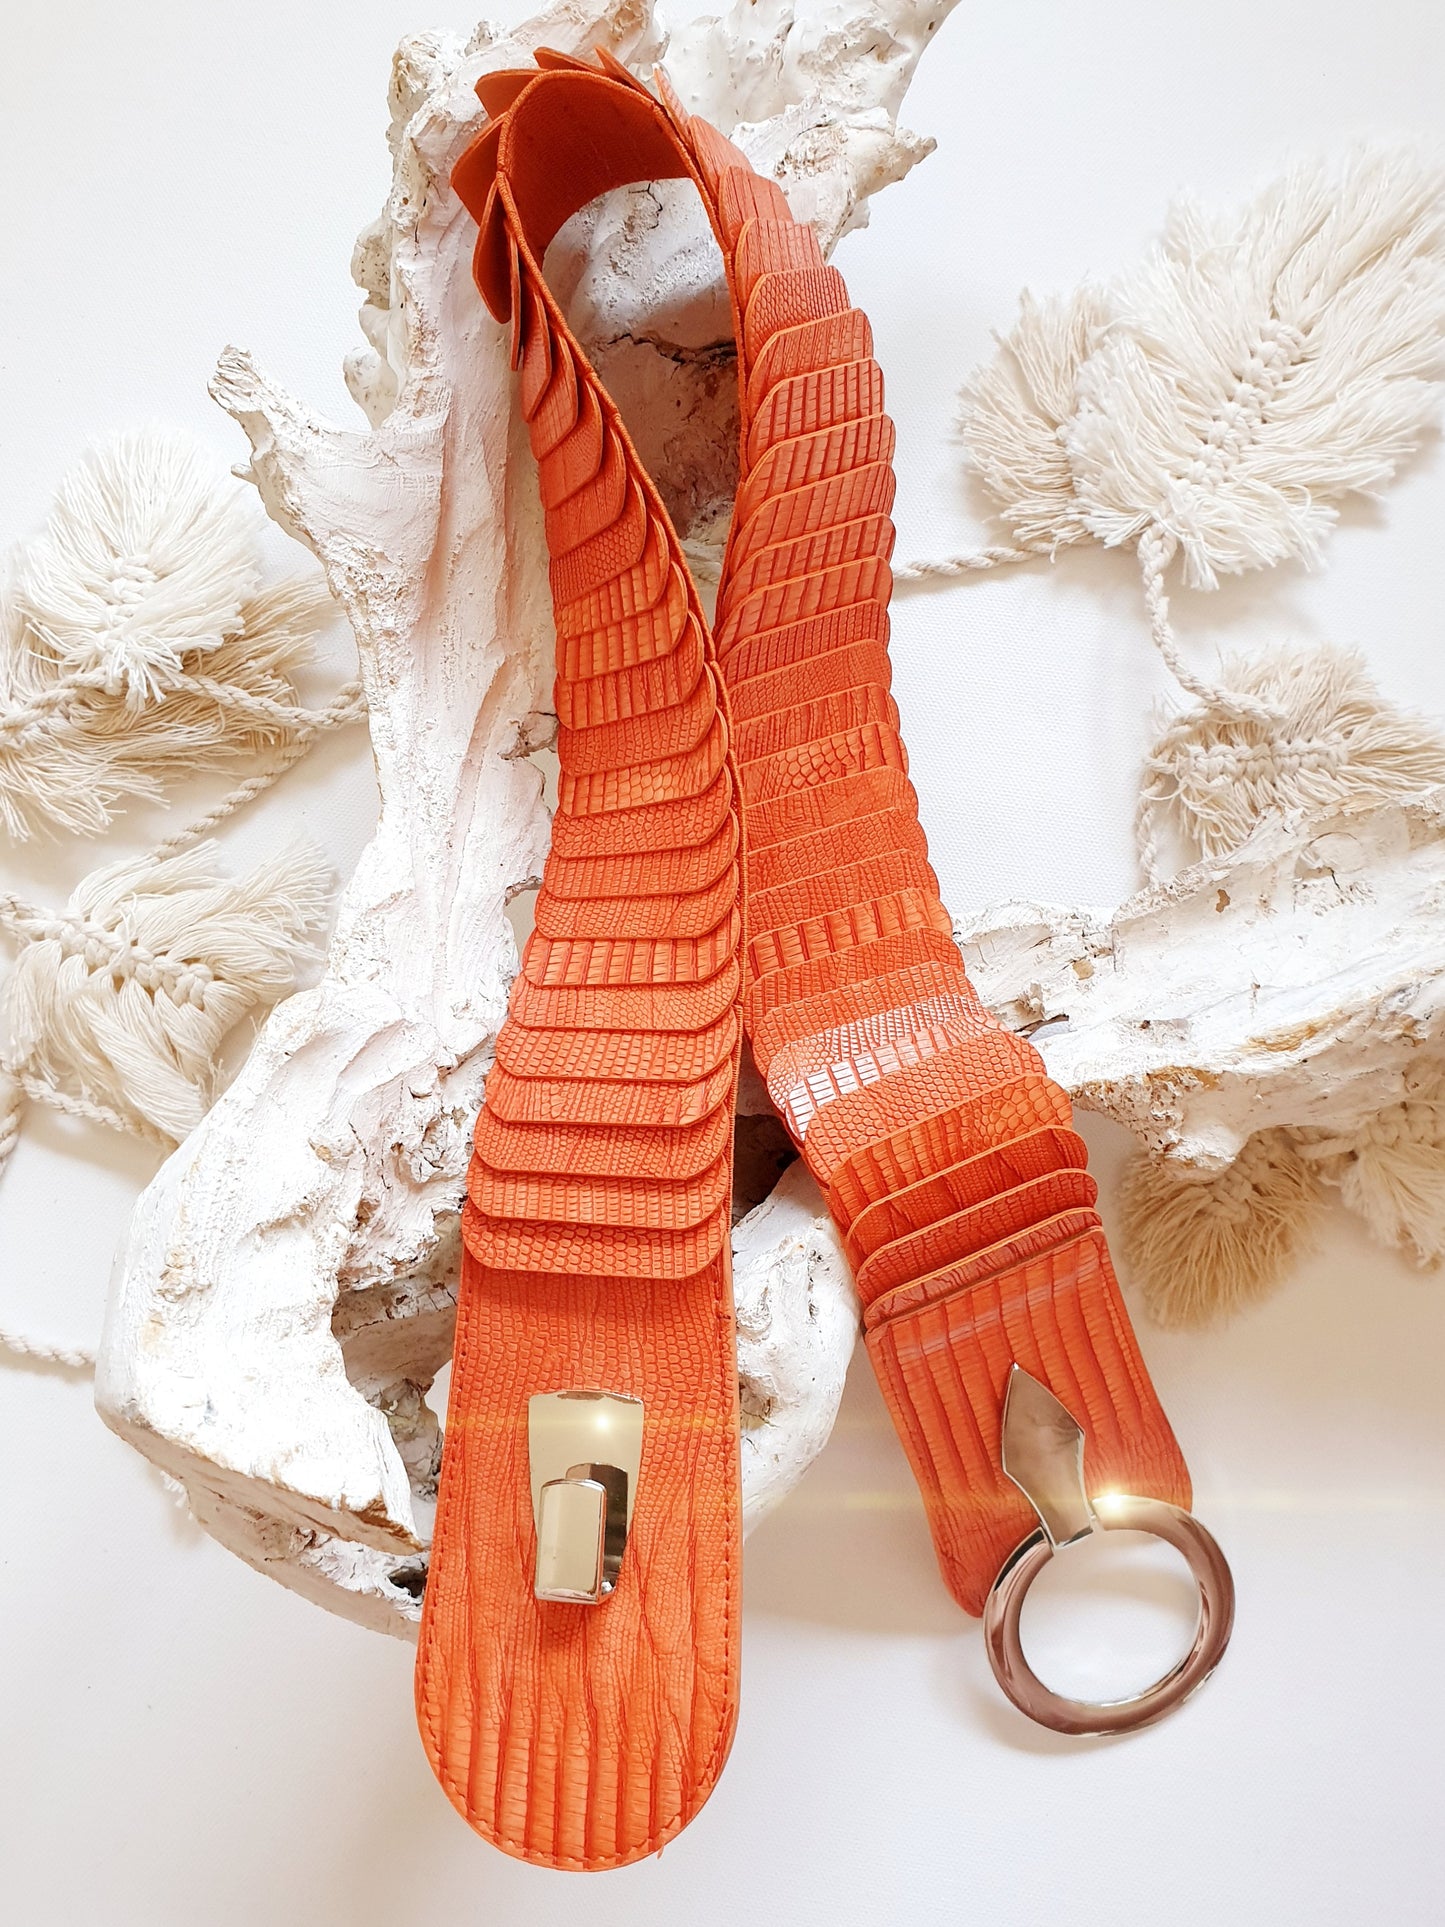 Breiter Stretchgürtel aus Kunstleder mit Krokoprägung in Orange